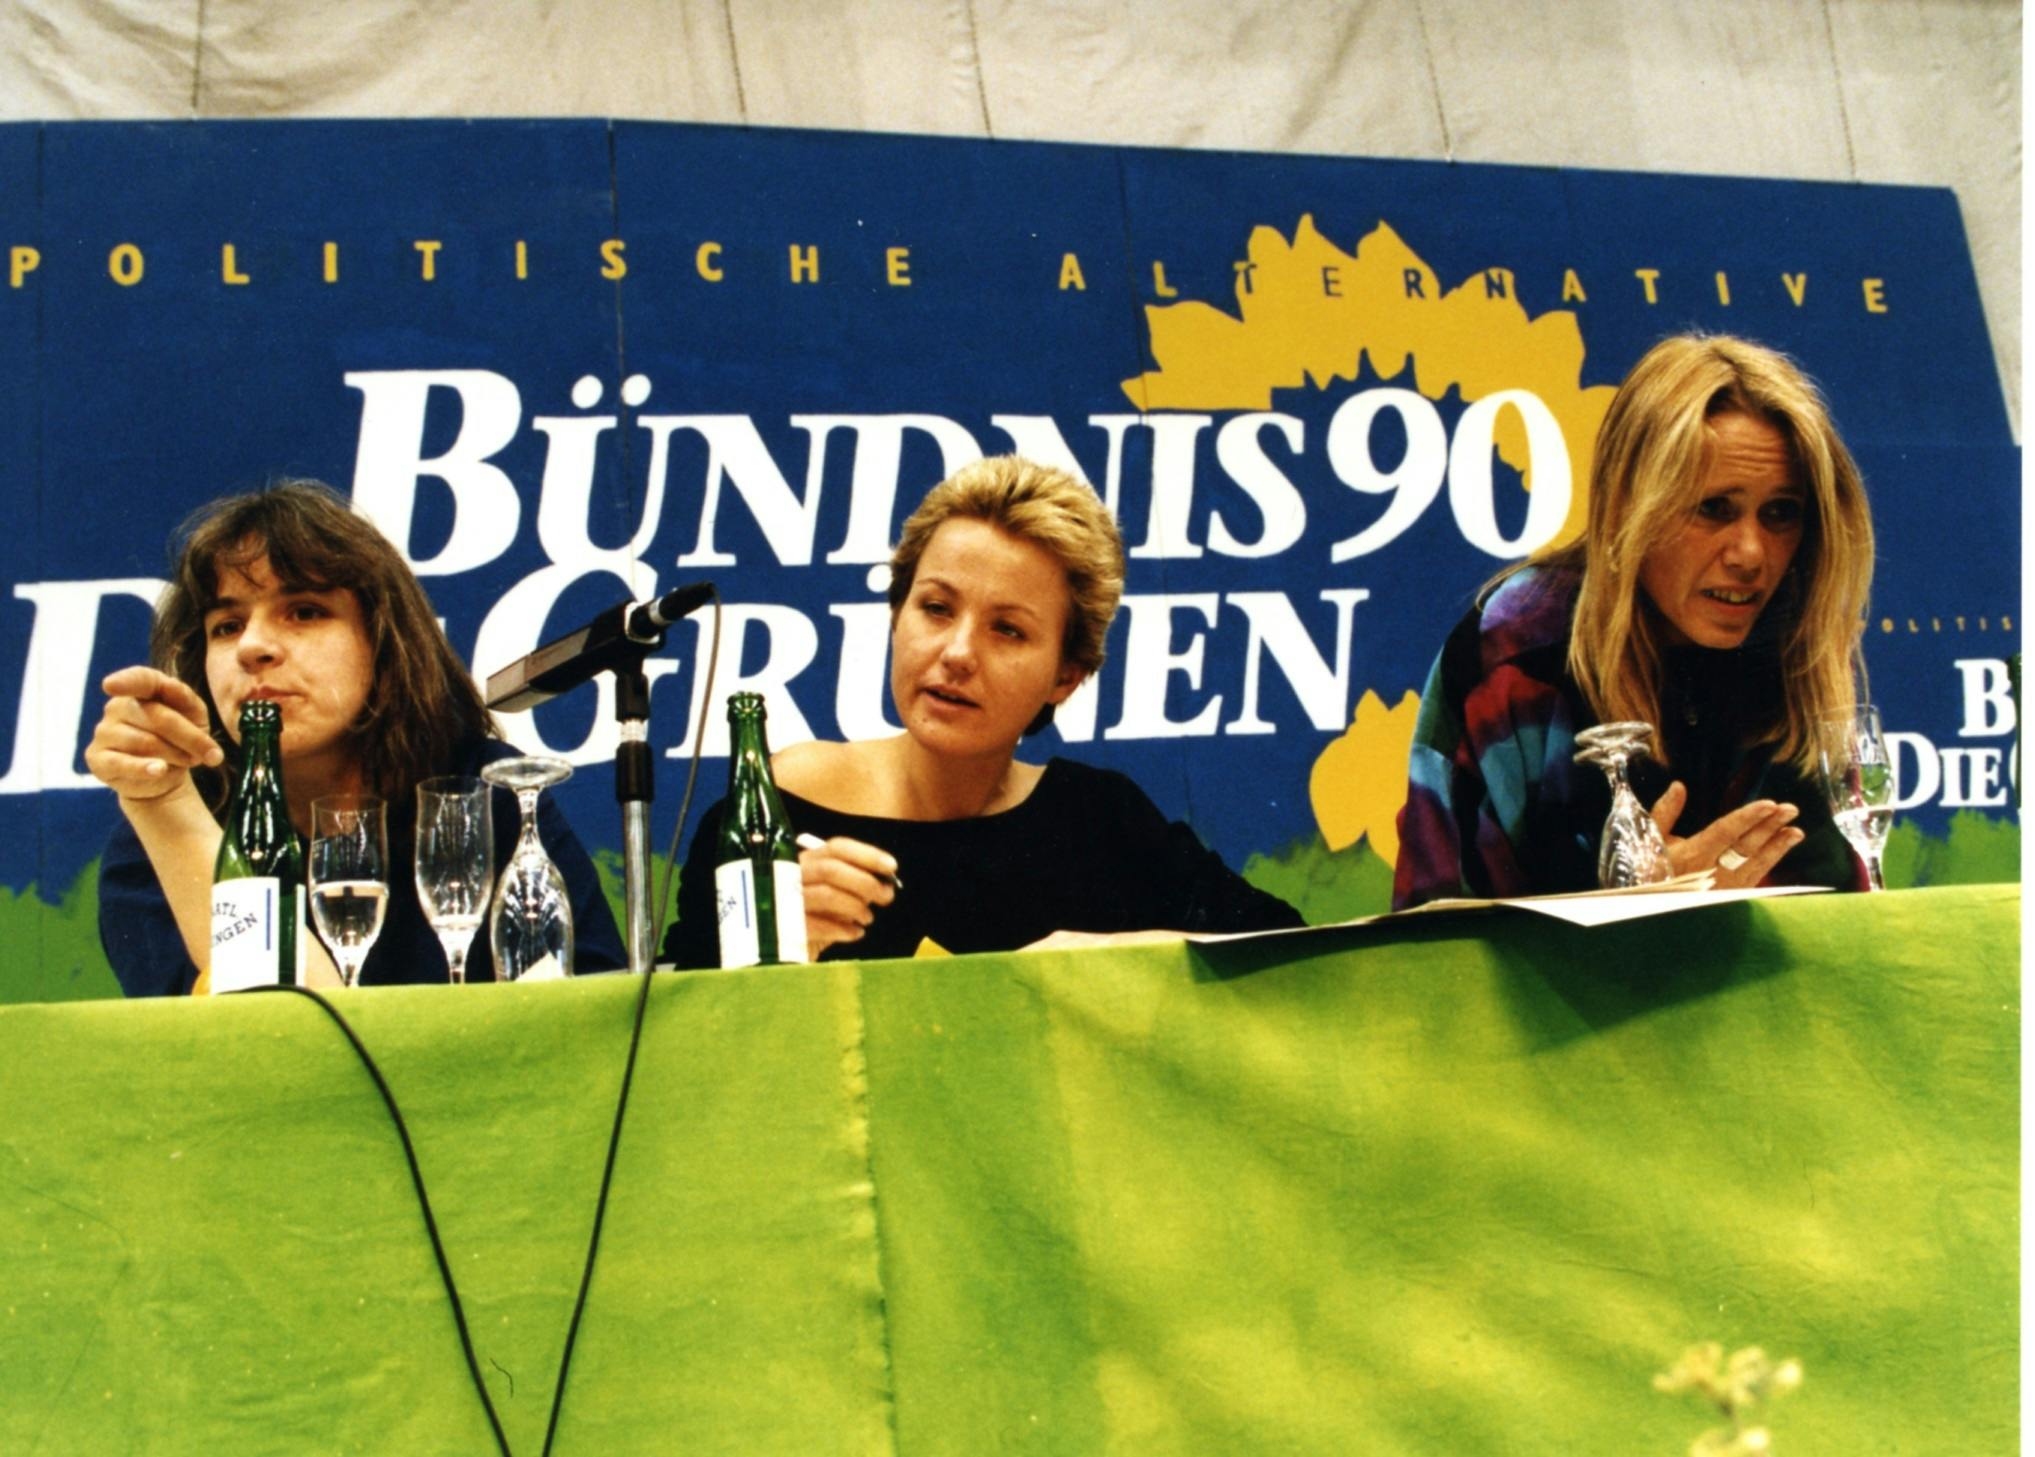 Drei Frauen sitzen an einem Tisch, der mit einem grünen Tuch bedeckt ist und auf dem Mikros und Wasserflaschen stehen. Im Hintergrund ein Schirftzug: "Bündnis 90/DIE GRÜNEN""